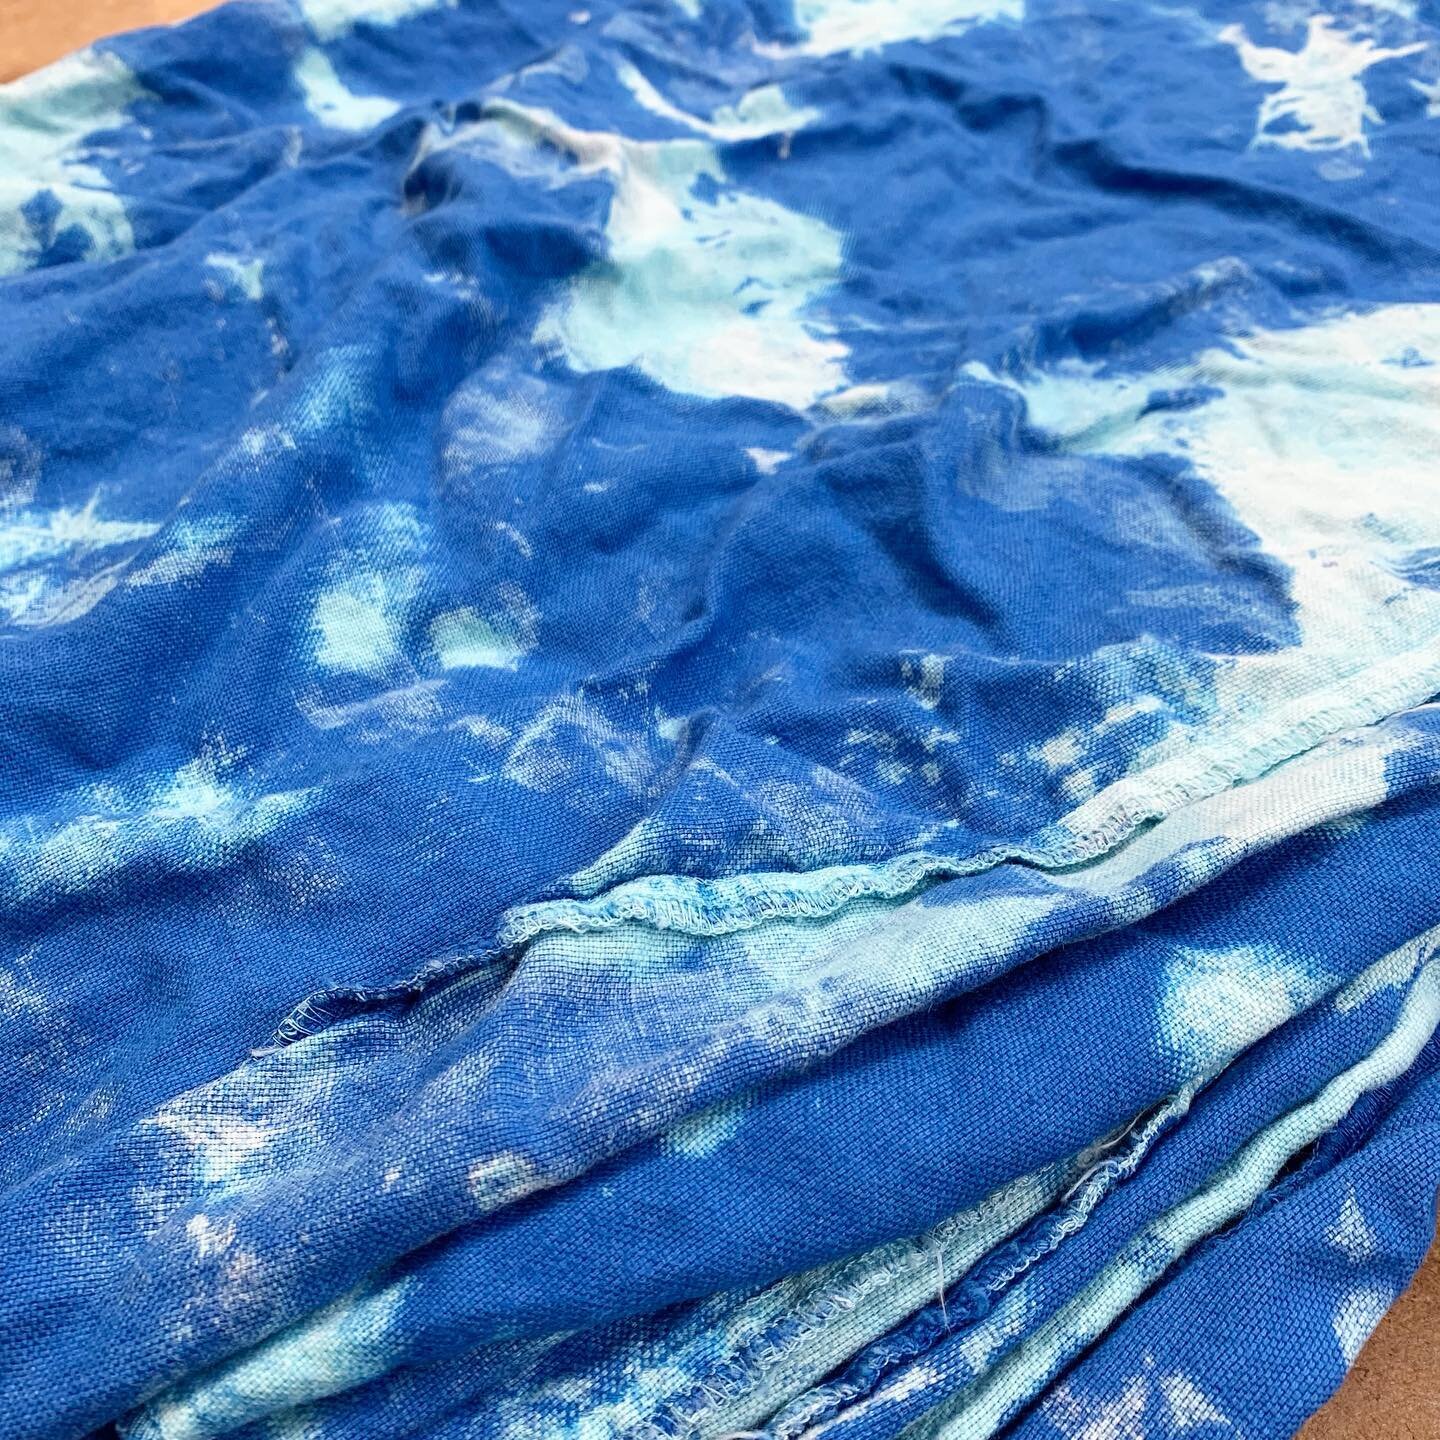 Blue tie dye // #dyehouse #LA #fashion #garmentdye